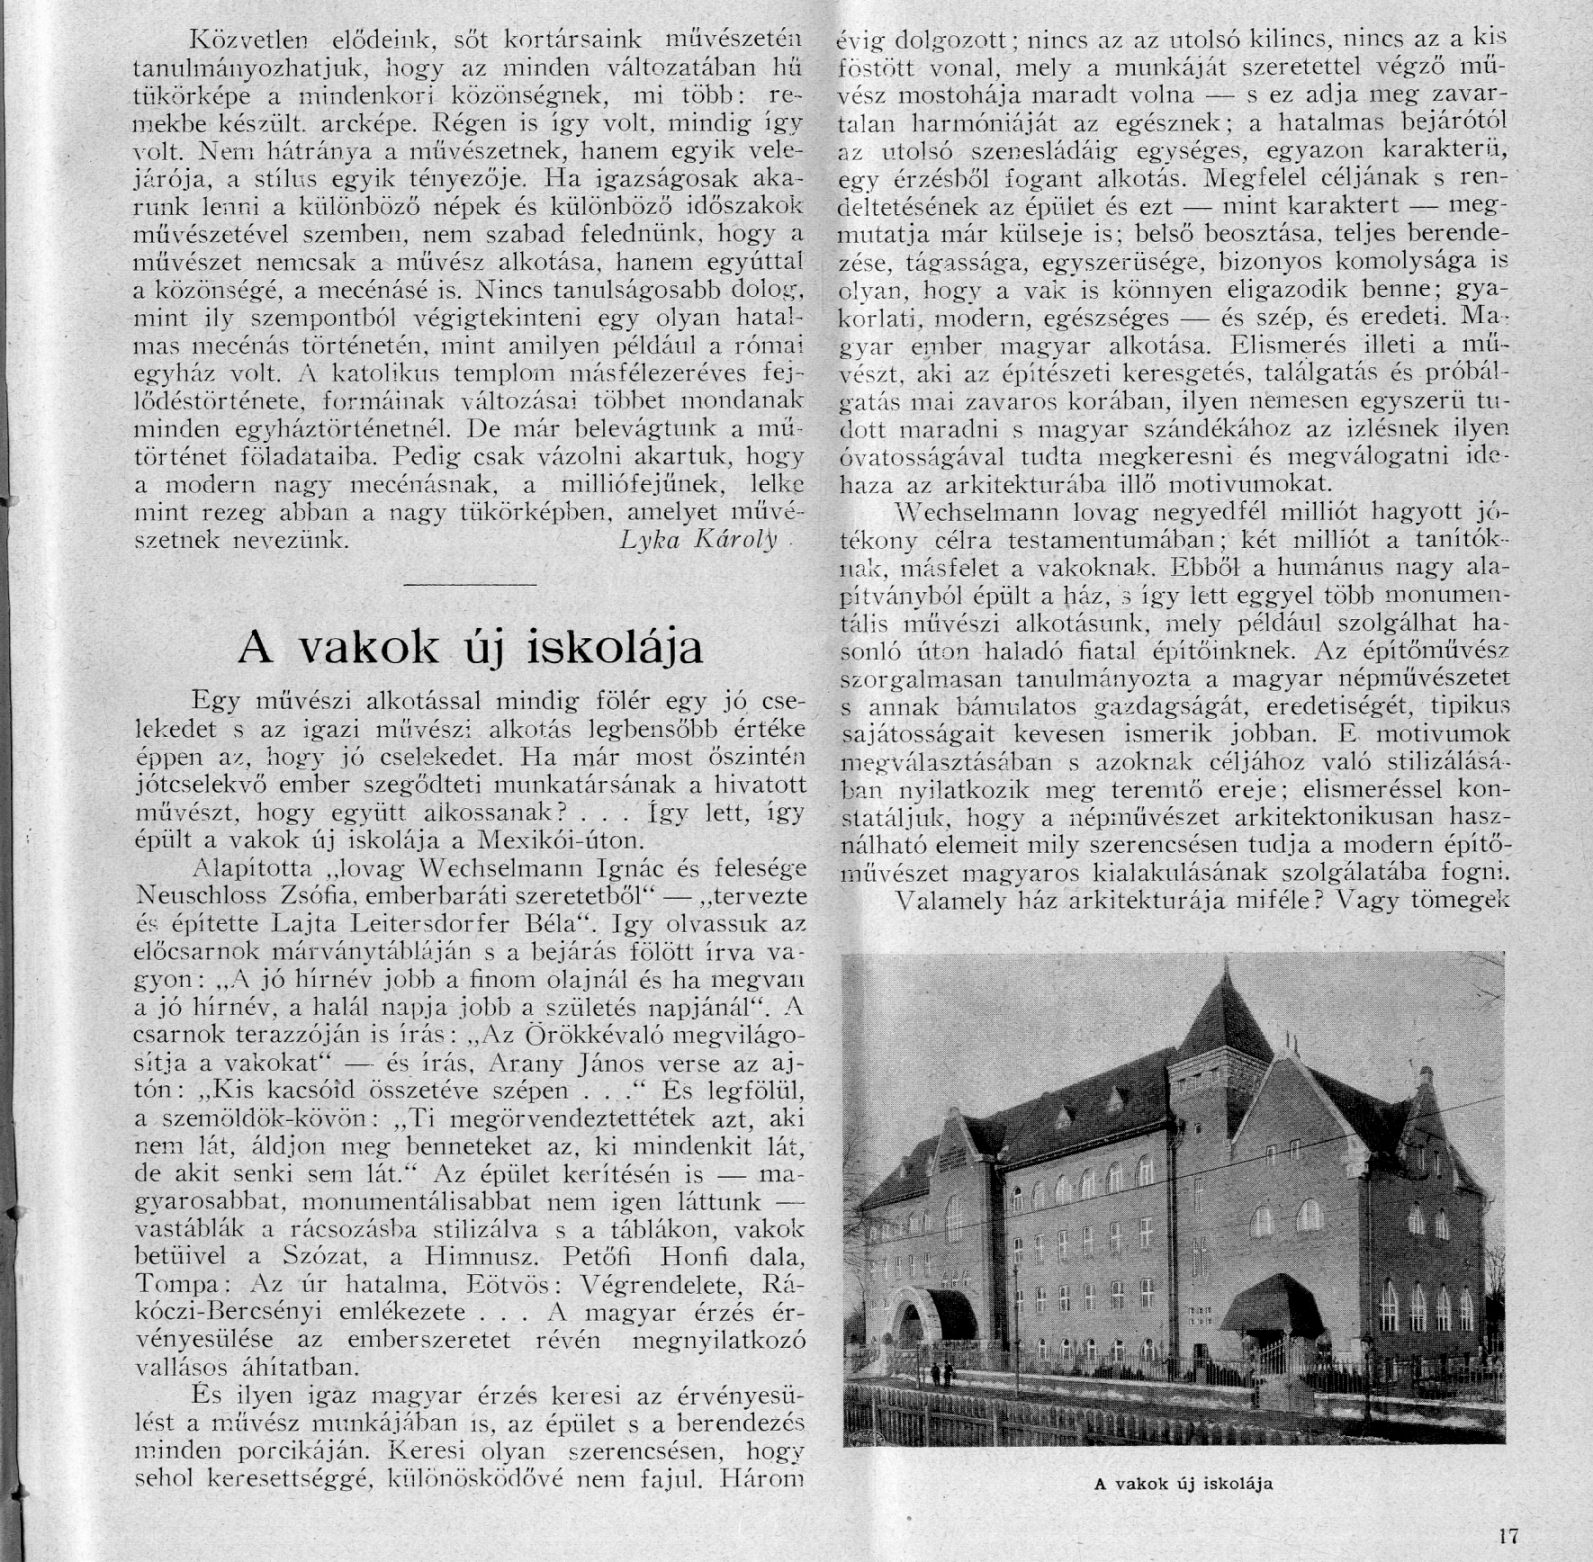 25_Új Idők, 1909/1. 18. p. 